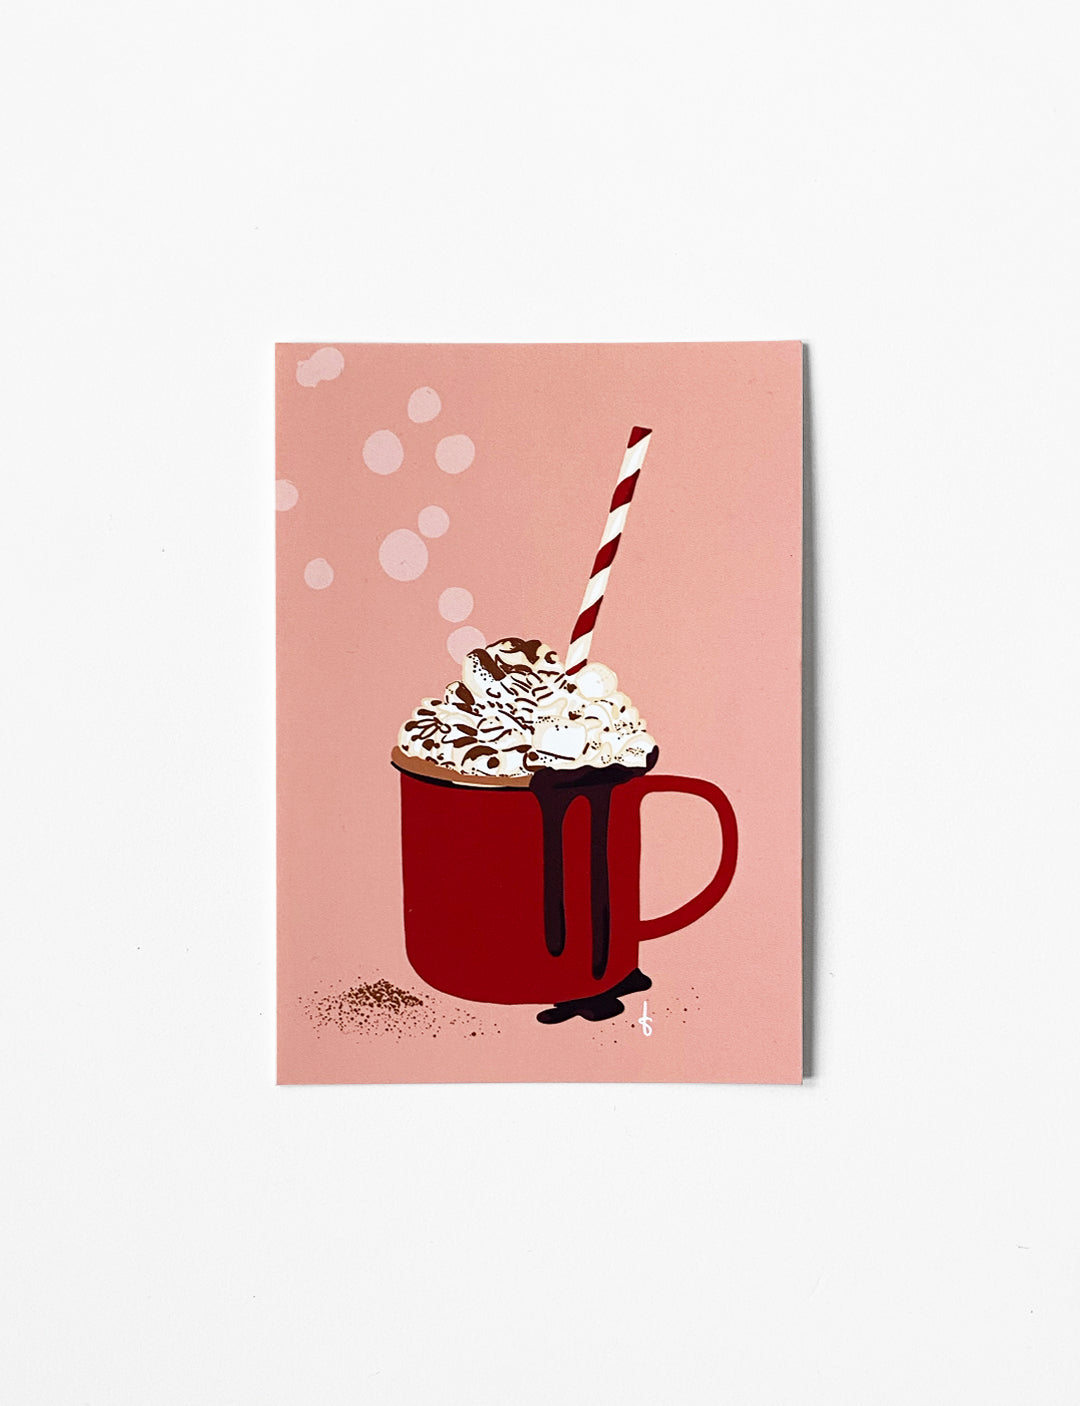 Ansichtkaart (A6) met handgetekende Hot chocolate illustratie. Deze stijlvolle wenskaart maakt onderdeel uit van een kaartenset met kerst kaarten. Je kunt deze kerst kaarten kopen in onze webshop. Neem een kijkje tussen alle leuke kerstkaarten en andere originele kaarten. 